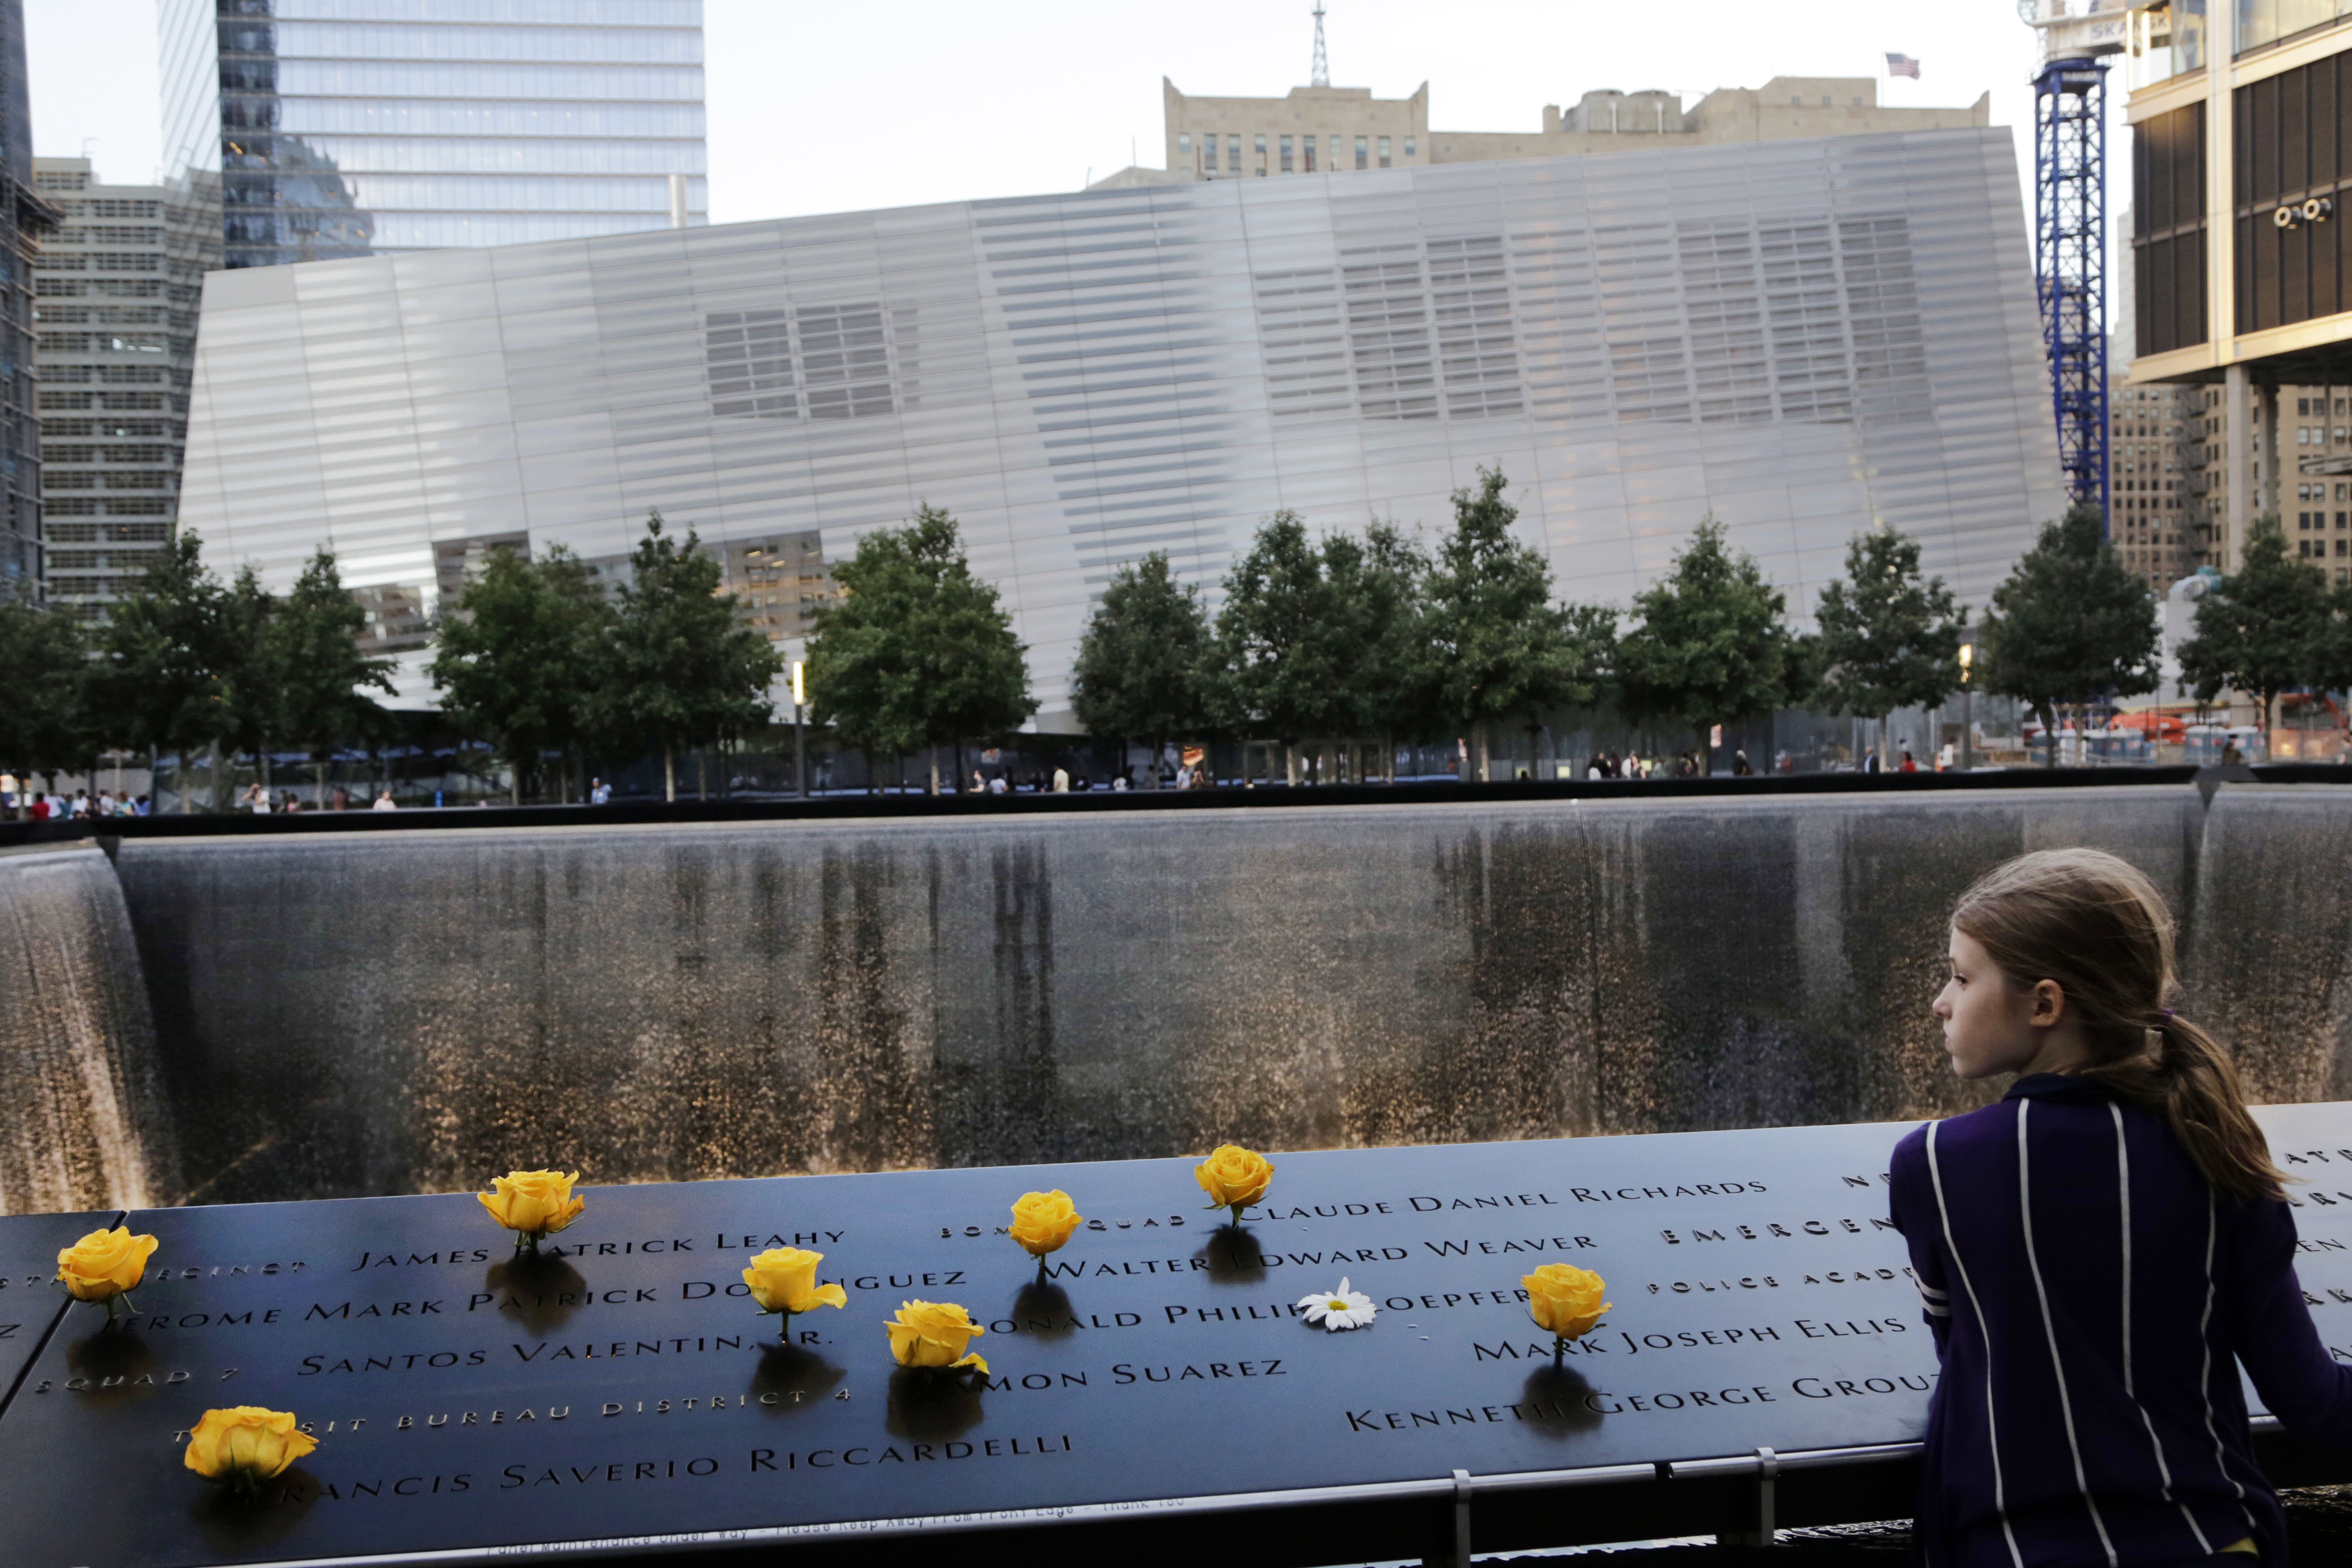 9 11 games. Мемориал 9/11 в Нью-Йорке. Мемориал 11 сентября в Нью-Йорке. Национальный мемориал и музей 11 сентября Нью-Йорк. Музей 11 сентября в Нью-Йорке.